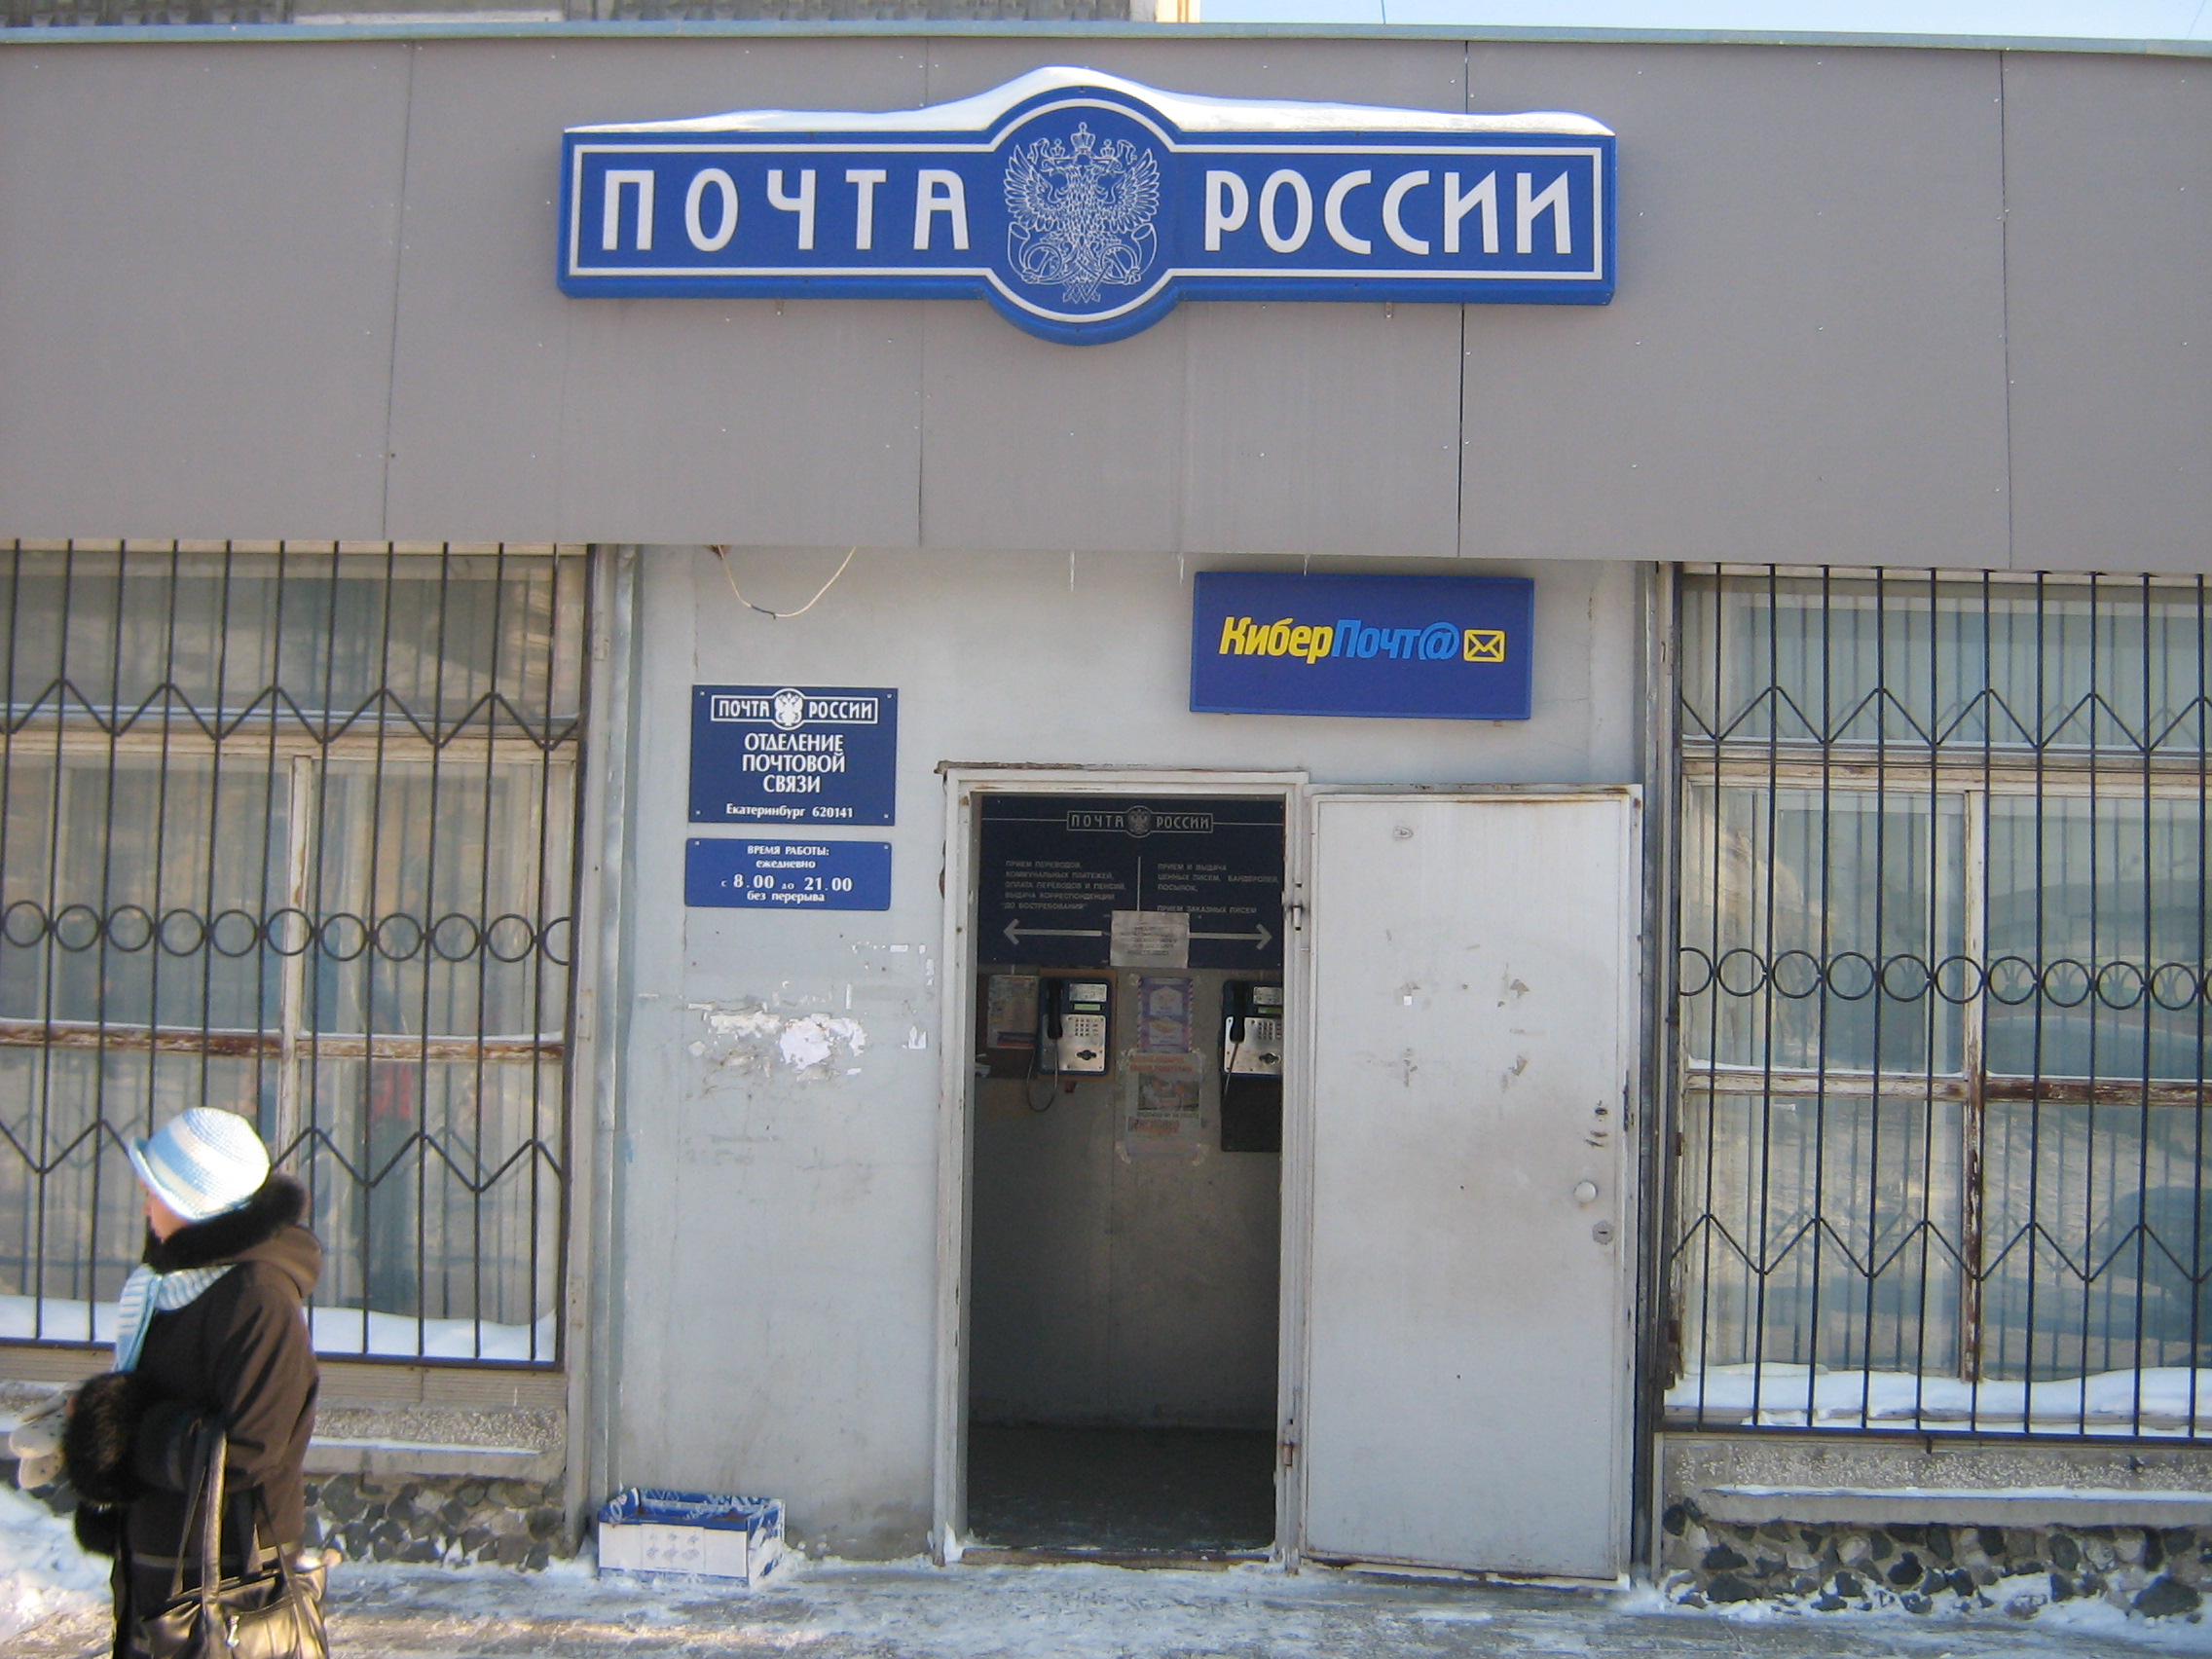 ВХОД, отделение почтовой связи 620141, Свердловская обл., Екатеринбург